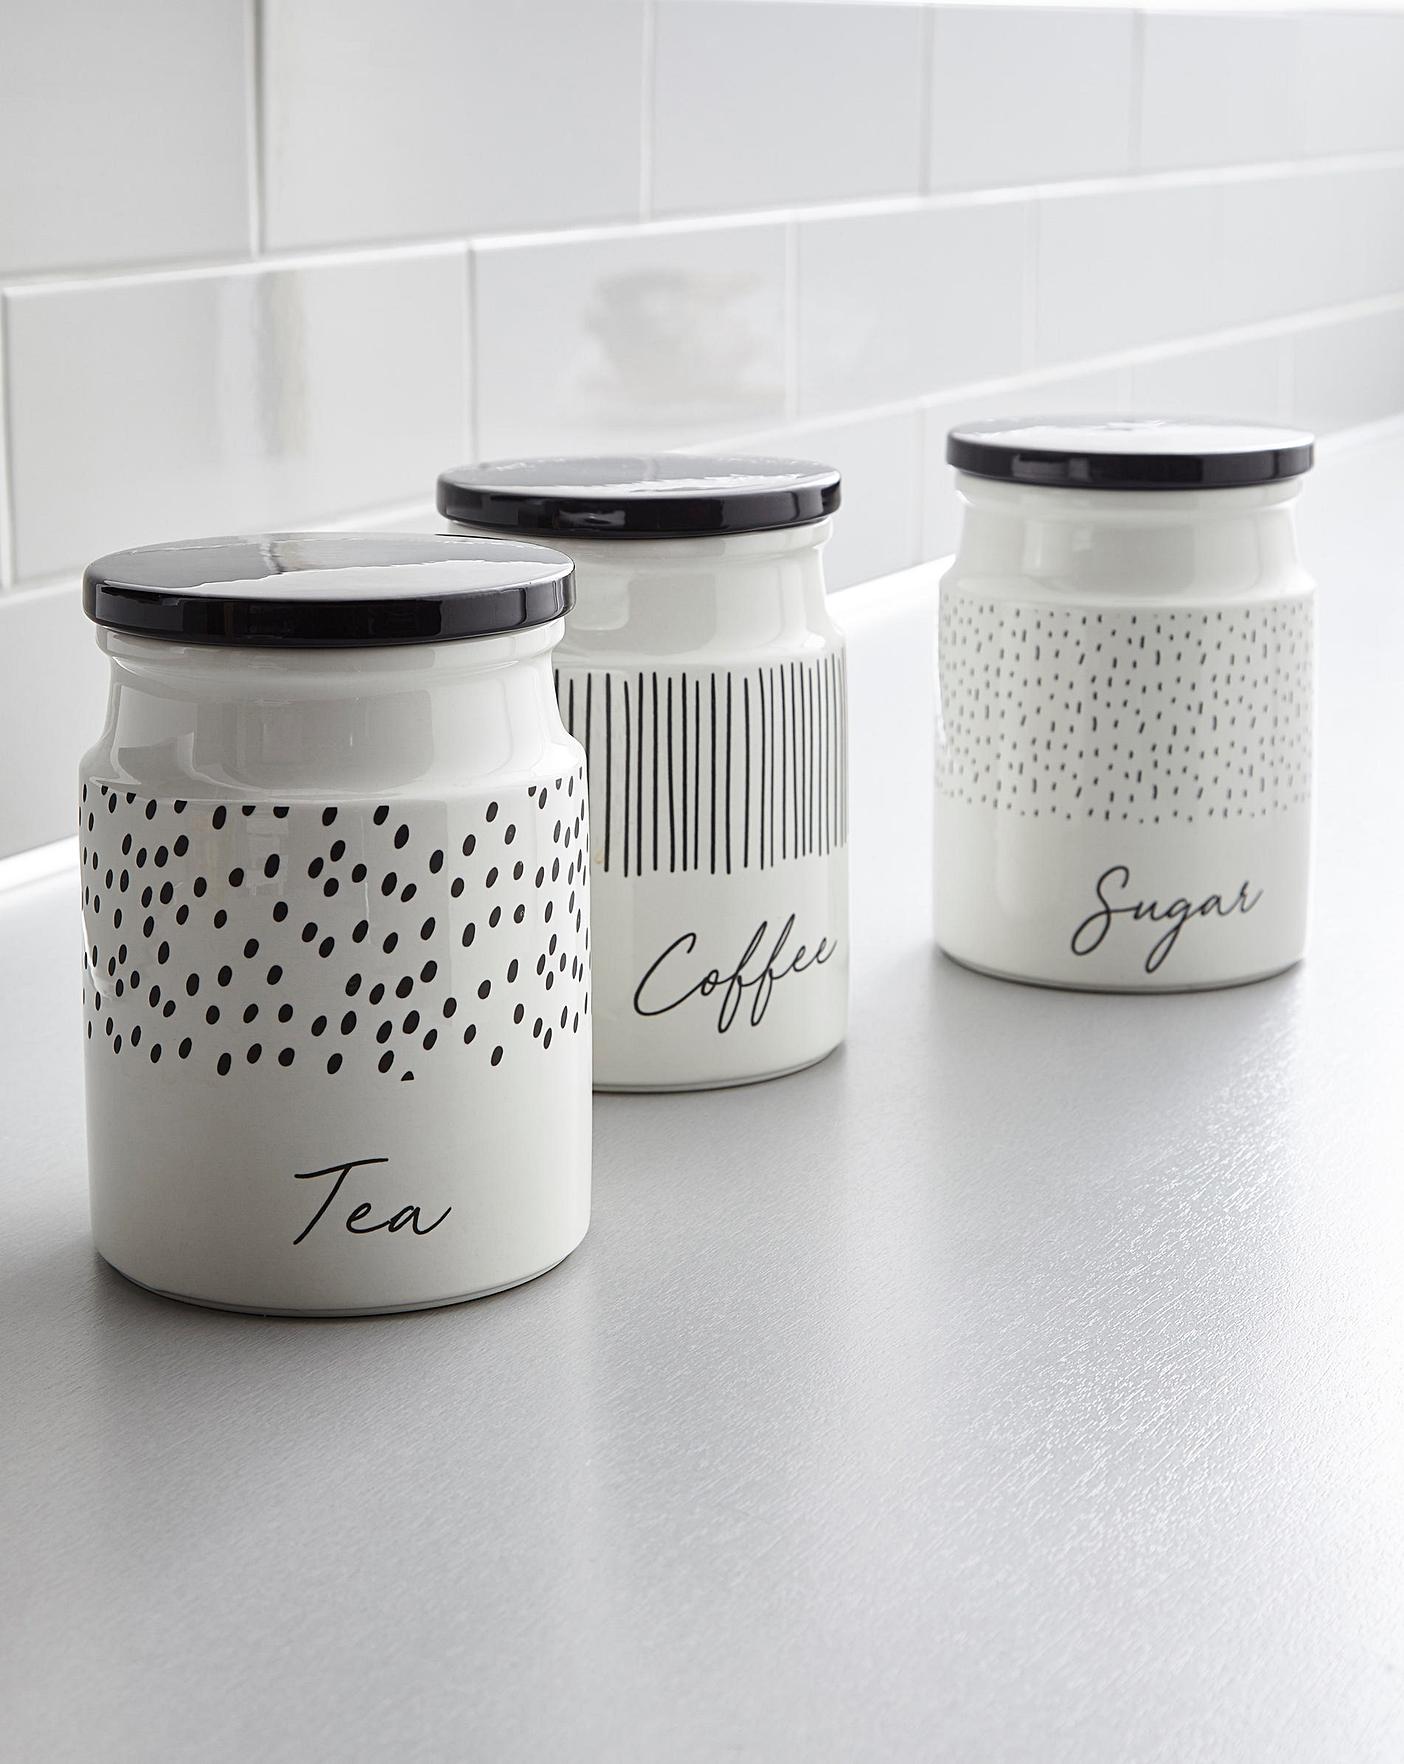 tea coffee sugar jars